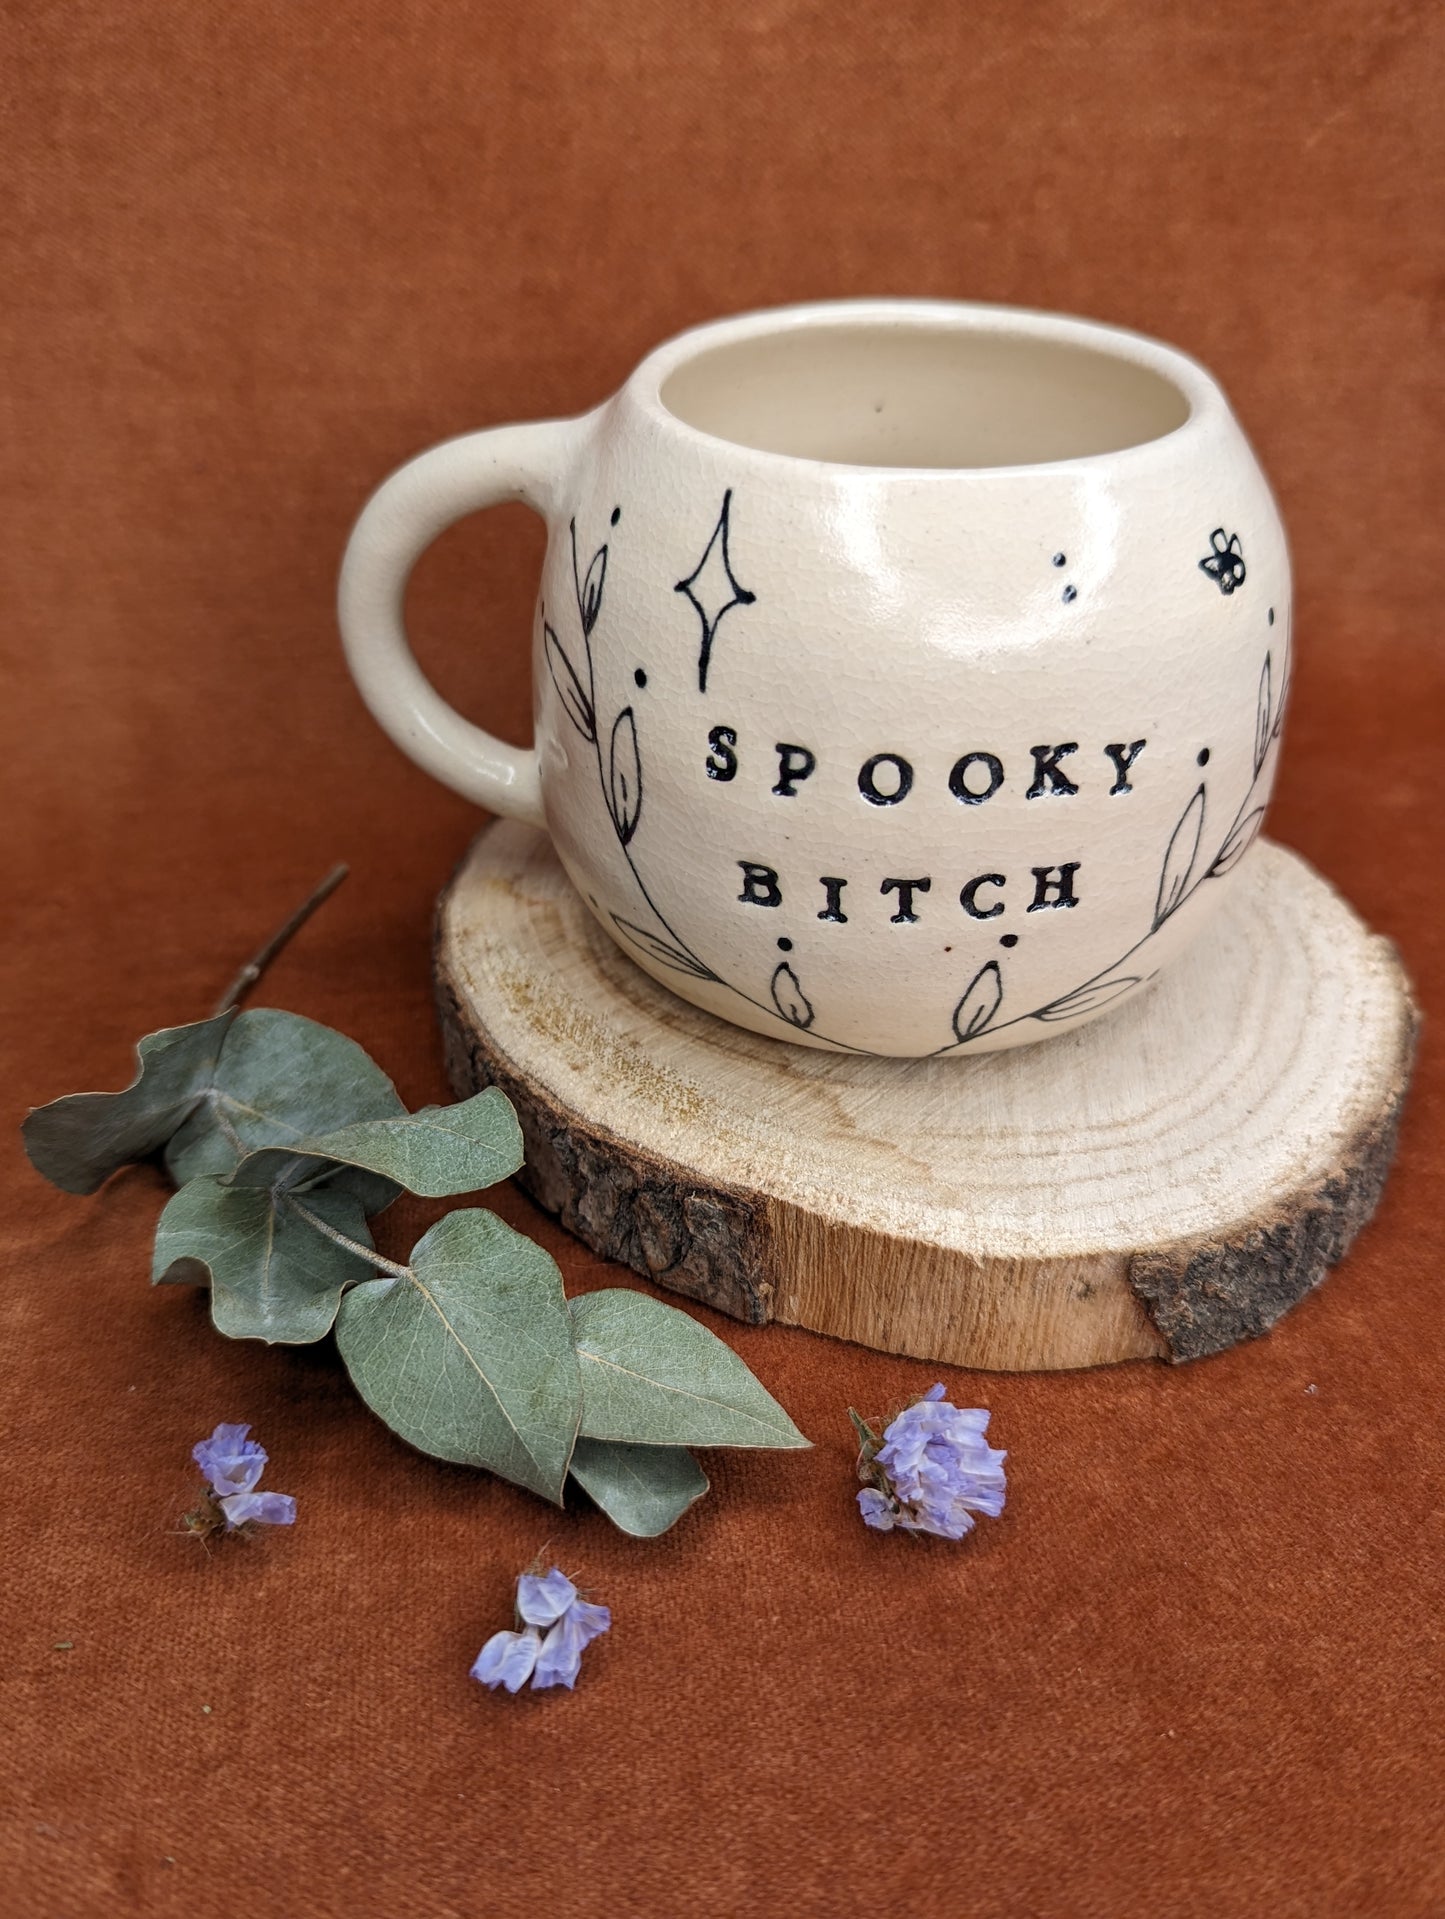 “Spooky Bitch” Mug by Genuine Quirk